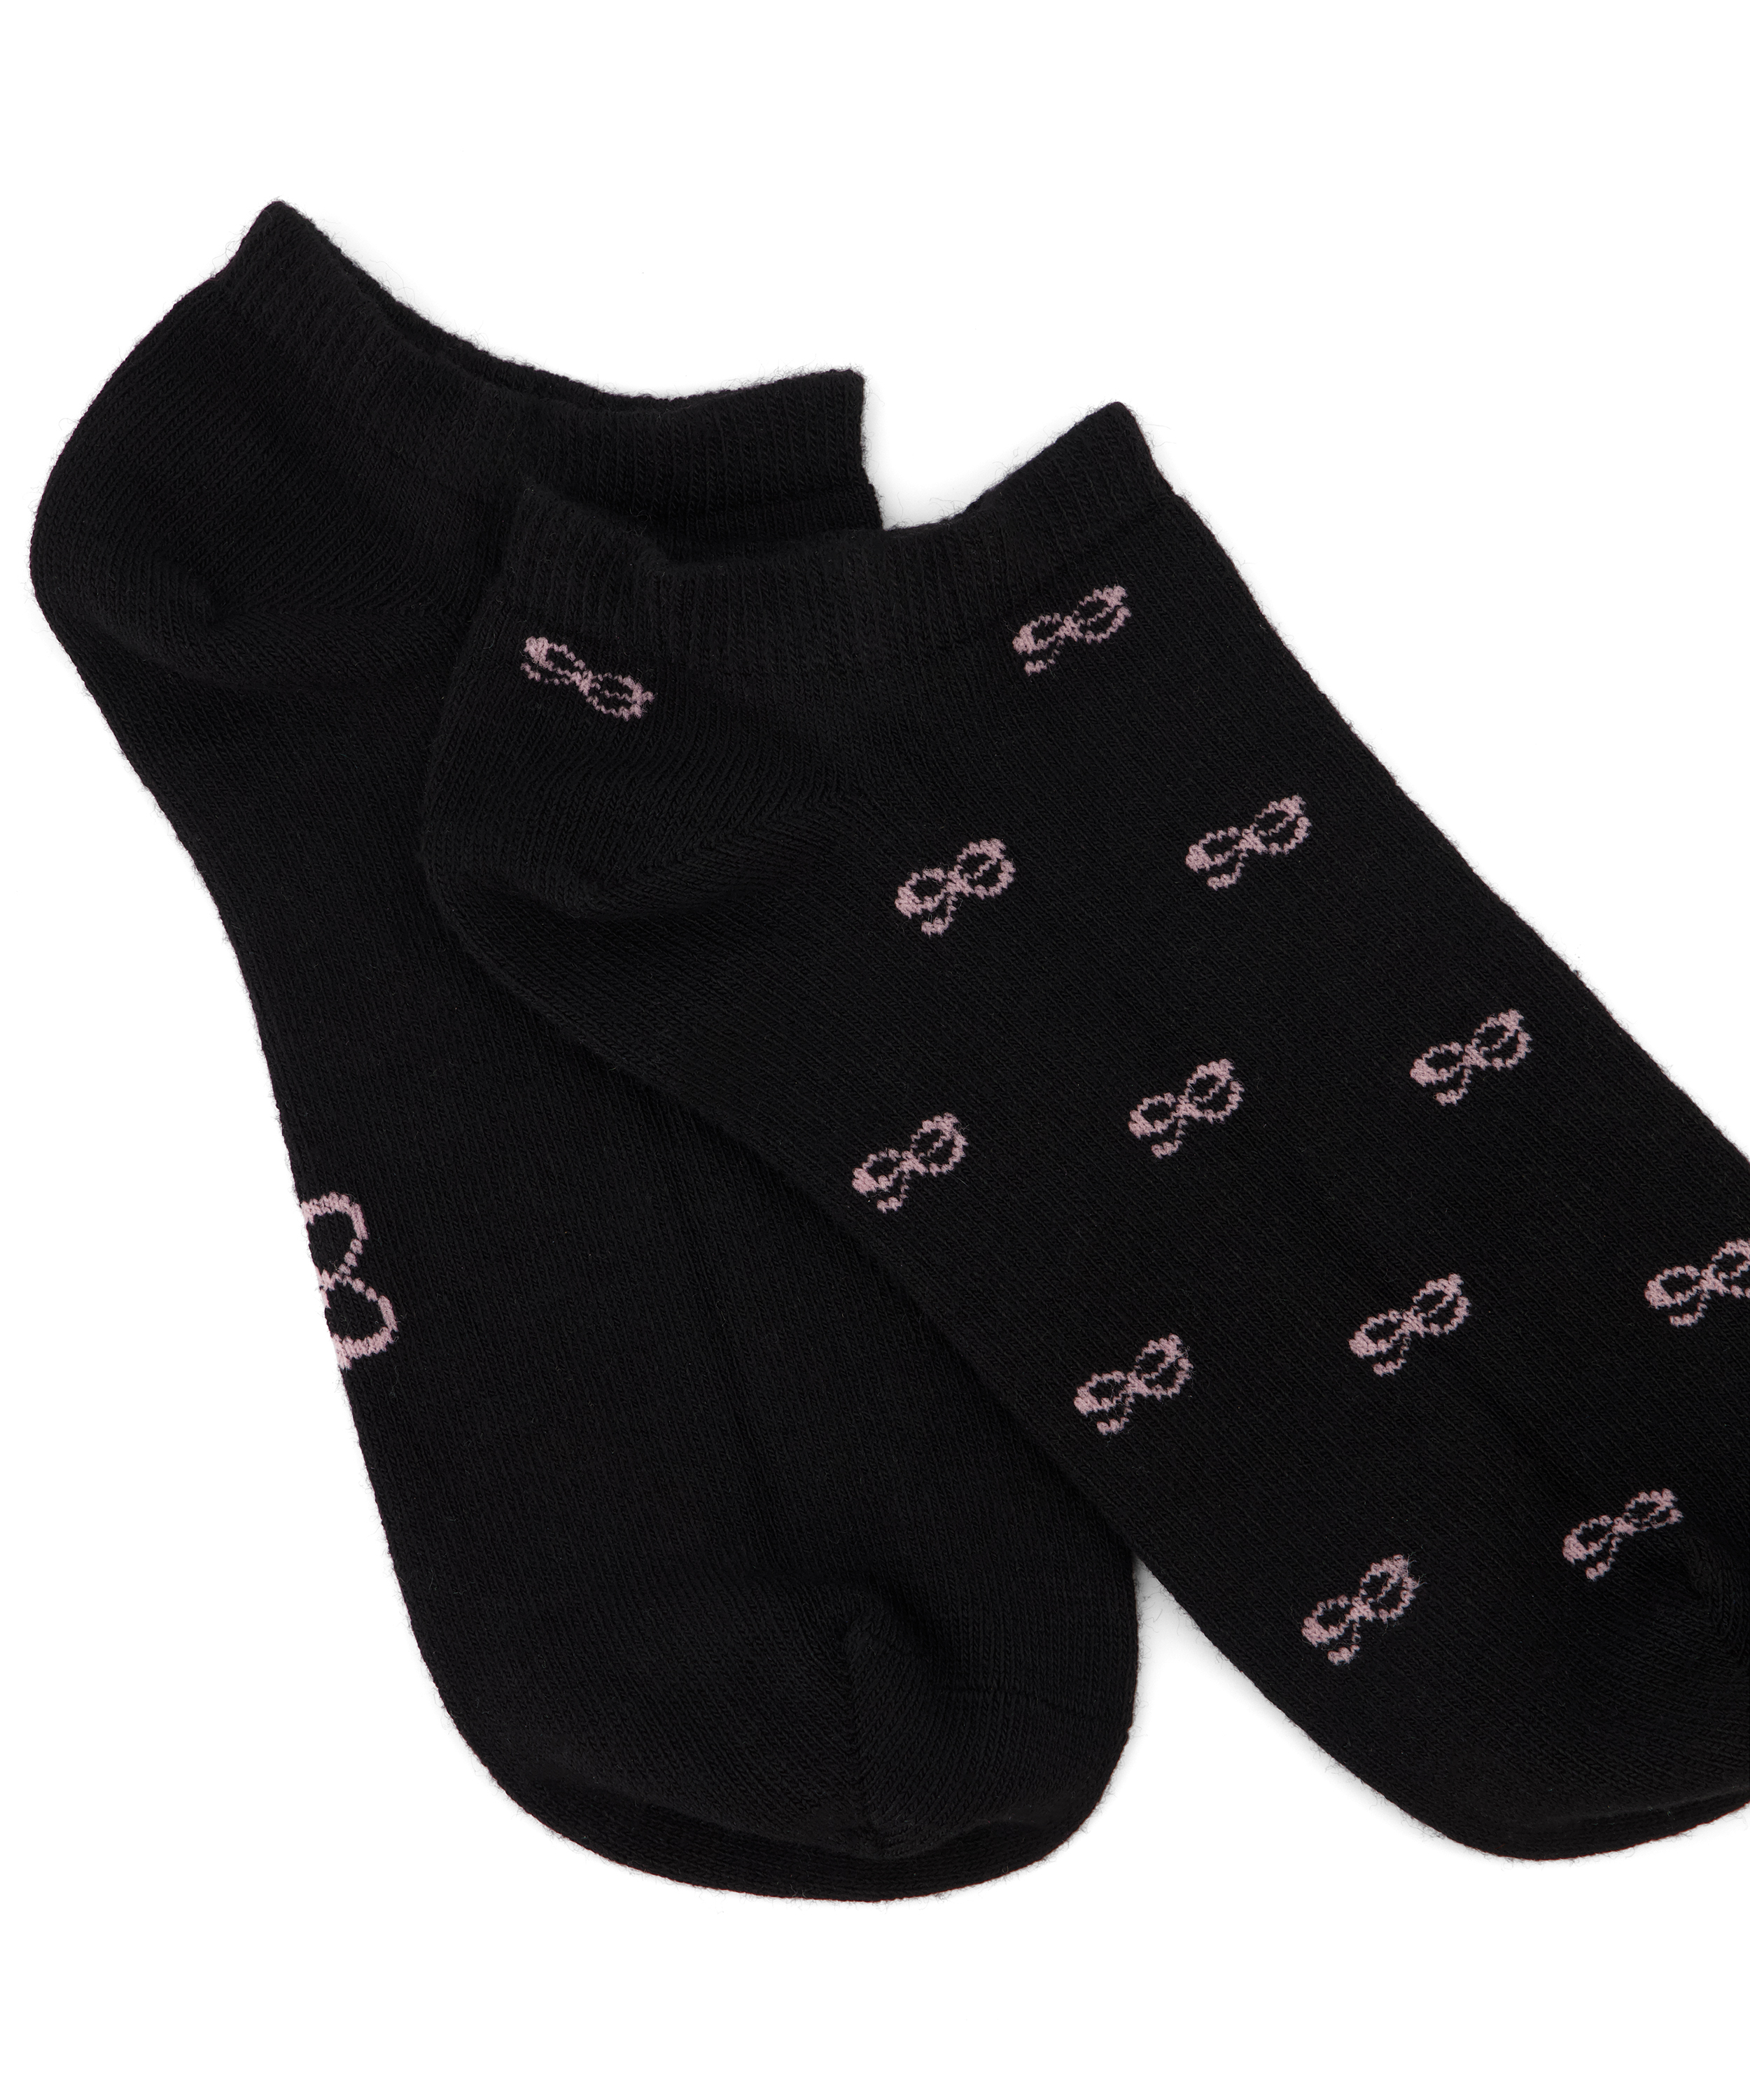 2 Paar Socken, Schwarz, main